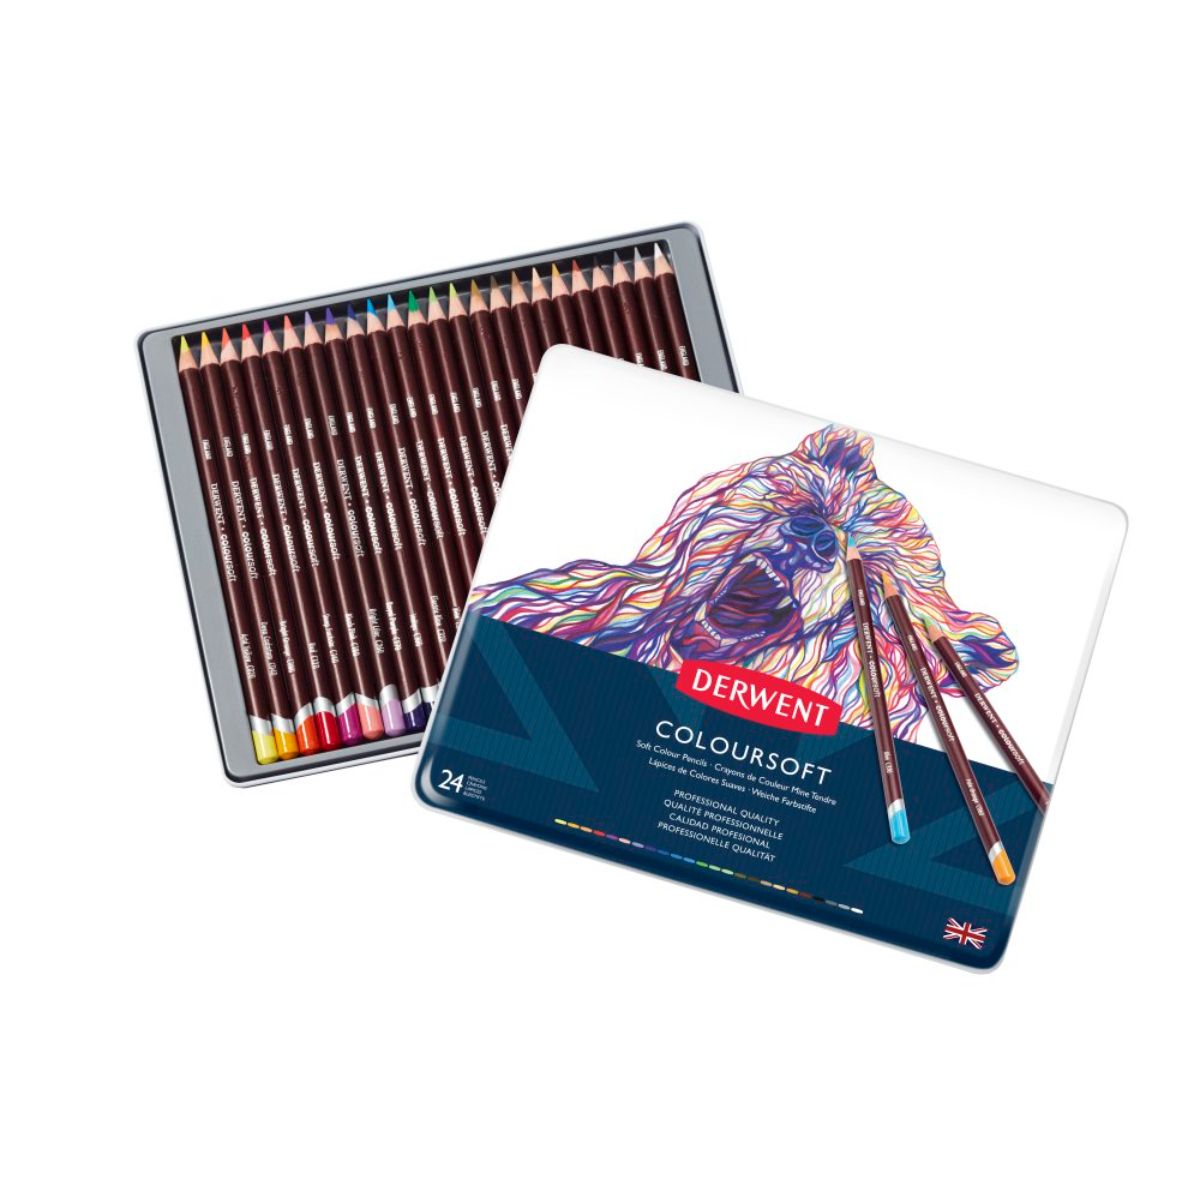 ダーウェント カラーソフト メタルケース 24色セット 文具 高級色鉛筆 イギリス製